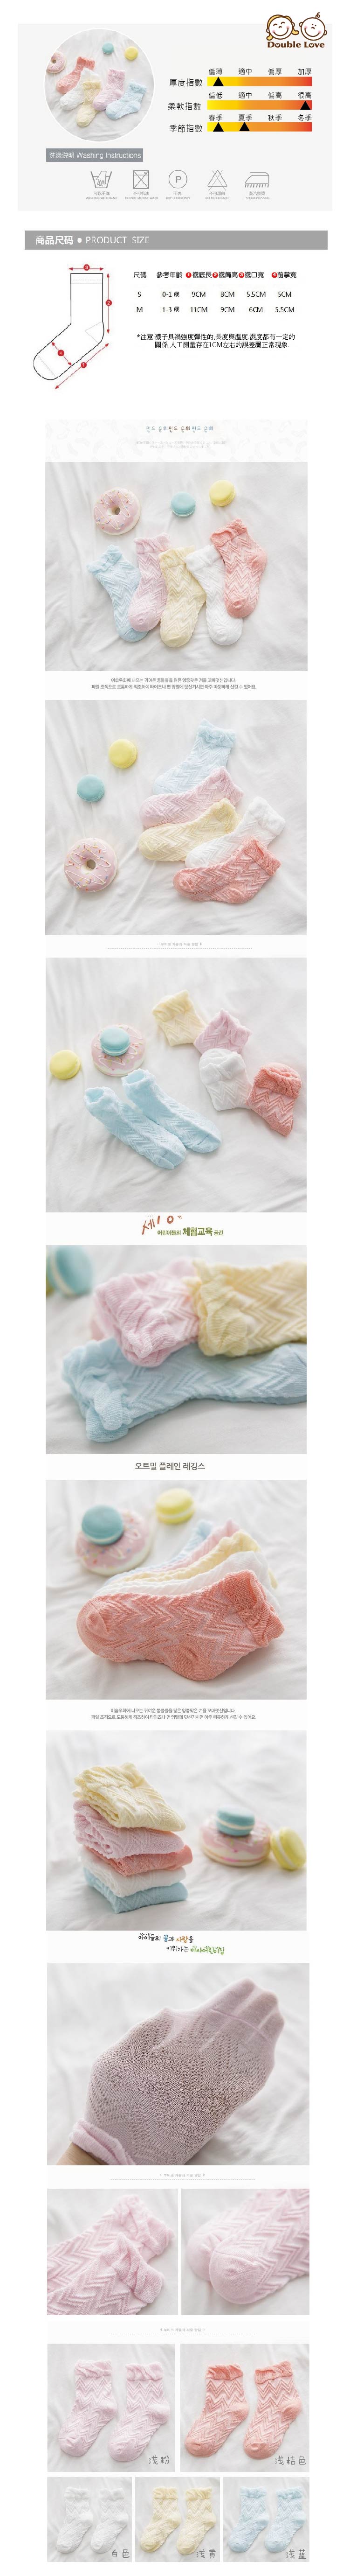 提花網眼寶寶襪【JB0019】外貿寶寶馬卡龍系透氣保暖網眼寶寶襪嬰兒襪 造型襪 精梳棉 (0-1Y/1-3Y)